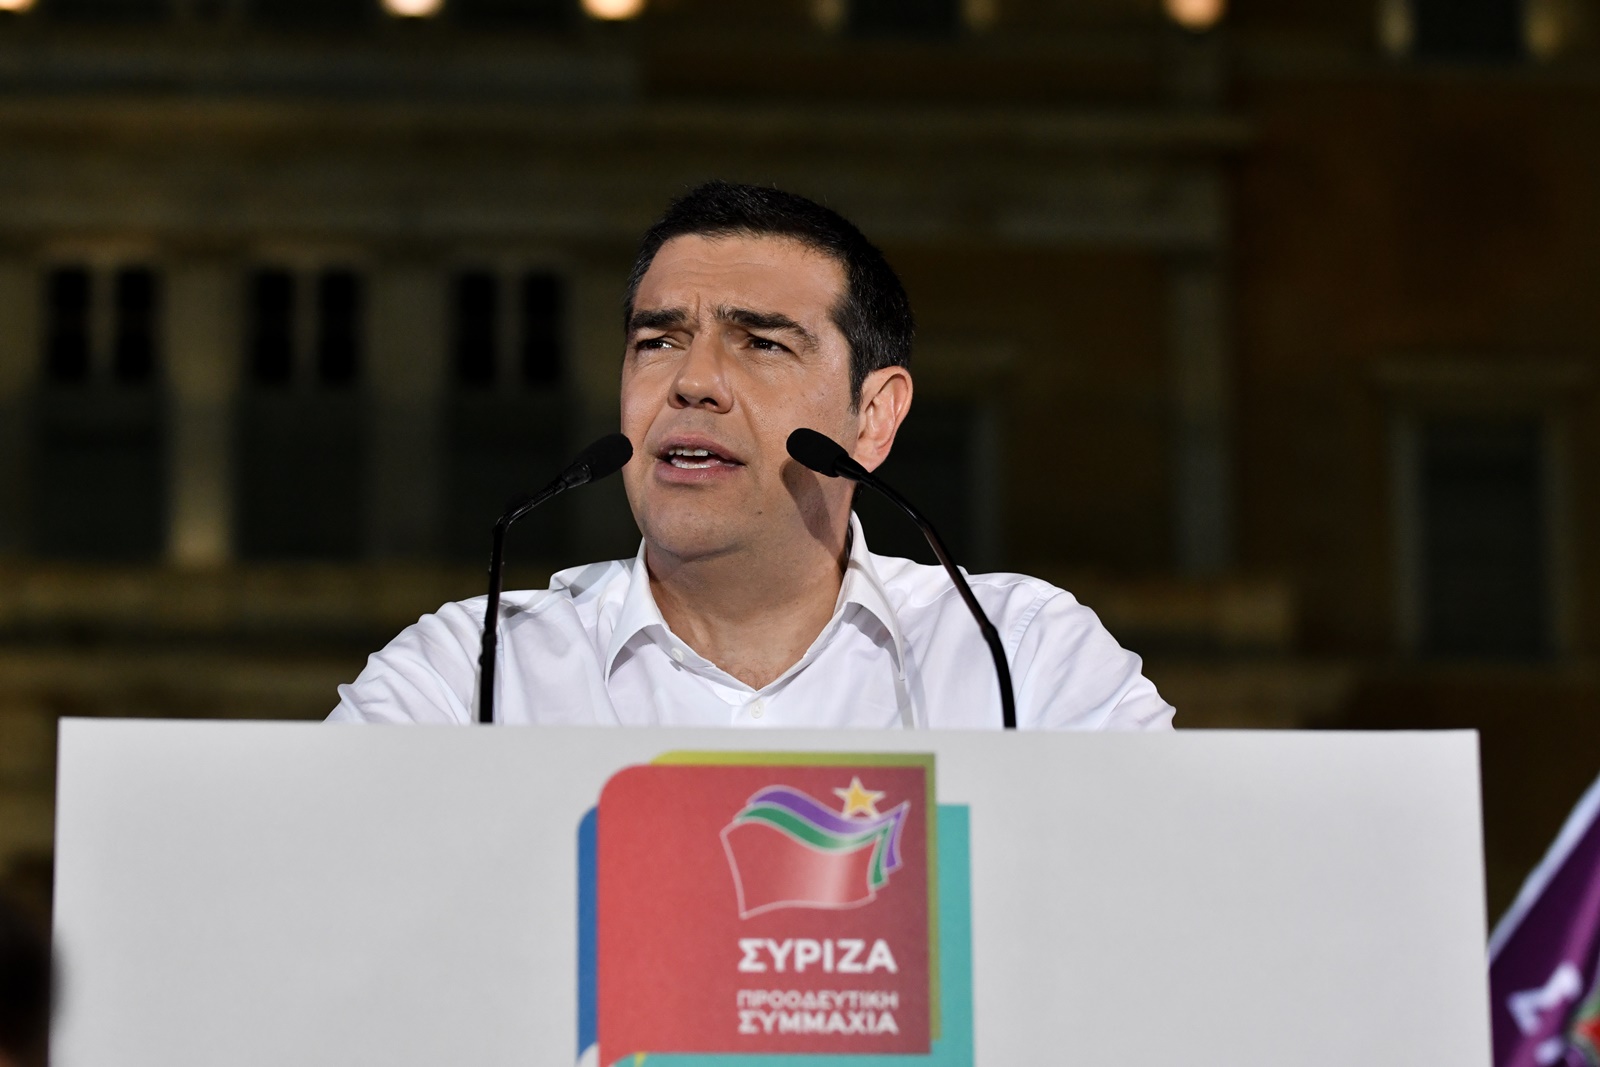 Τσίπρας – εκλογές ΣΥΡΙΖΑ: “Βέβαιο ότι θα νικήσουμε με διαφορά”